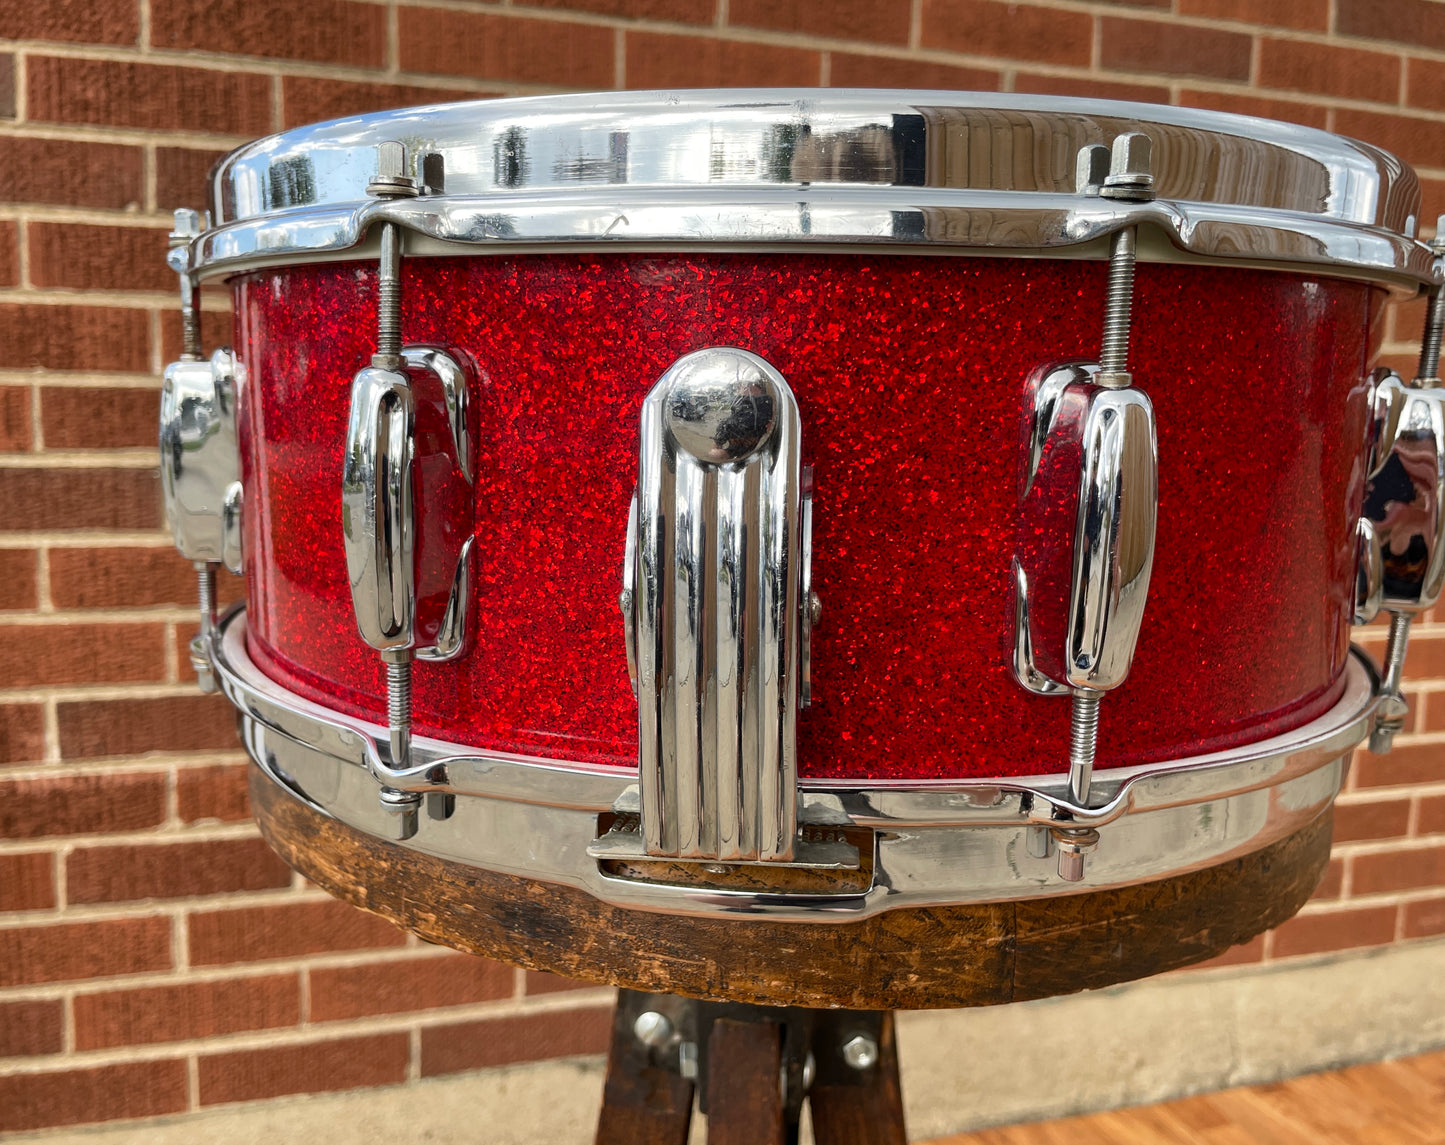 1953-56 Slingerland 5.5x14 Super Gene Krupa Radio King Snare Drum Red Sparkle Glass Glitter w/ Dog Tag Badge